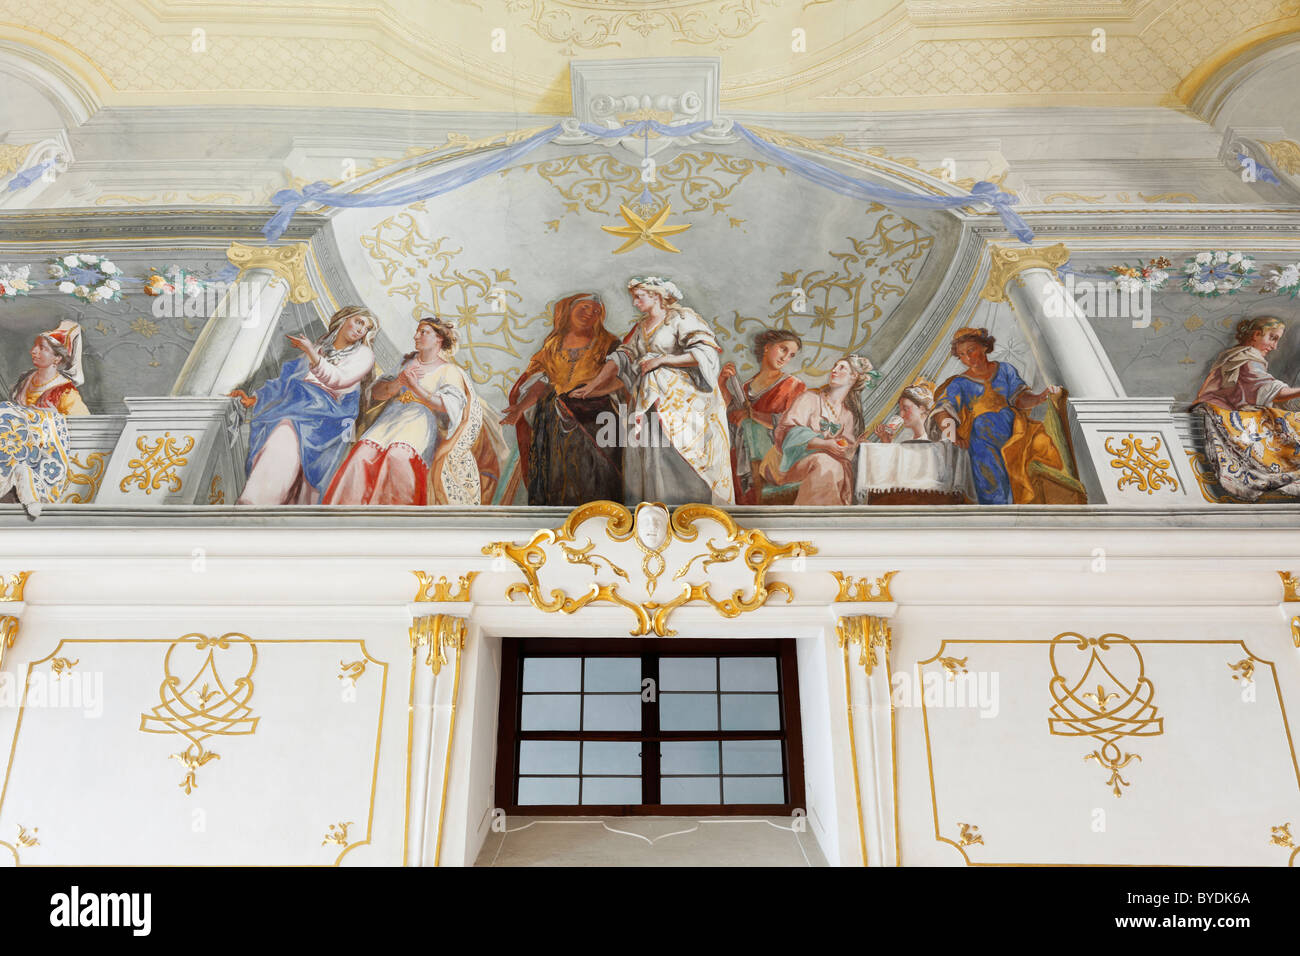 Decke Fresko, Hochzeit zu Kana von Johann Rudolf Byss und Johann Baptist Byss in Altmanni Halle im kaiserlichen Flügel Stockfoto